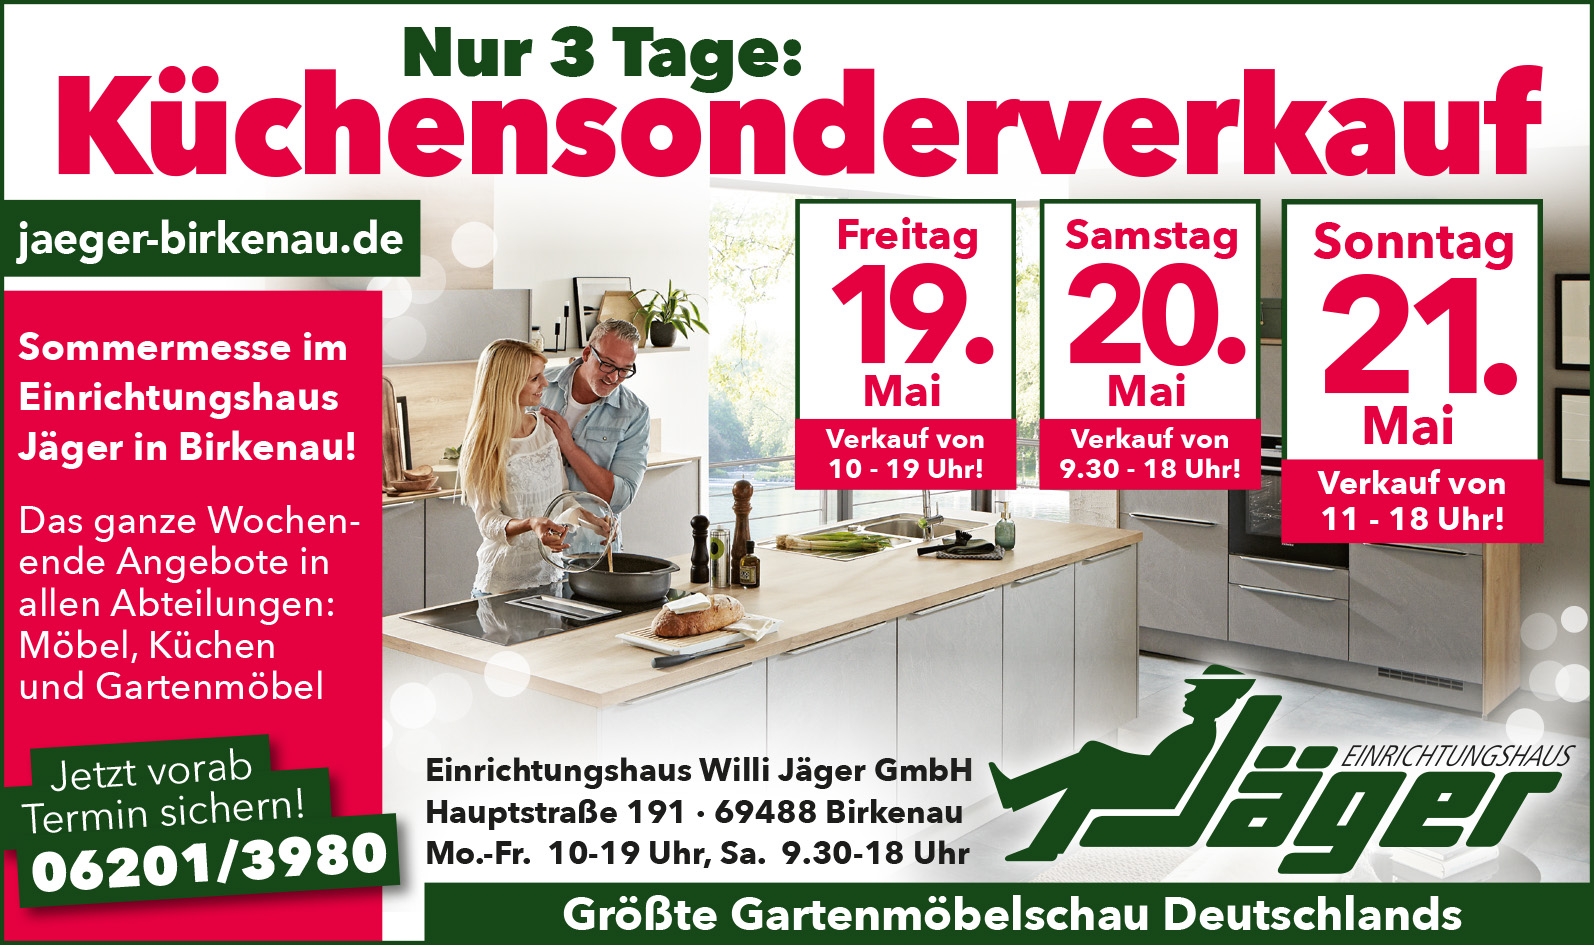 Nur 3 Tage Küchensonderverkauf im Einrichtungshaus Jäger in Birkenau